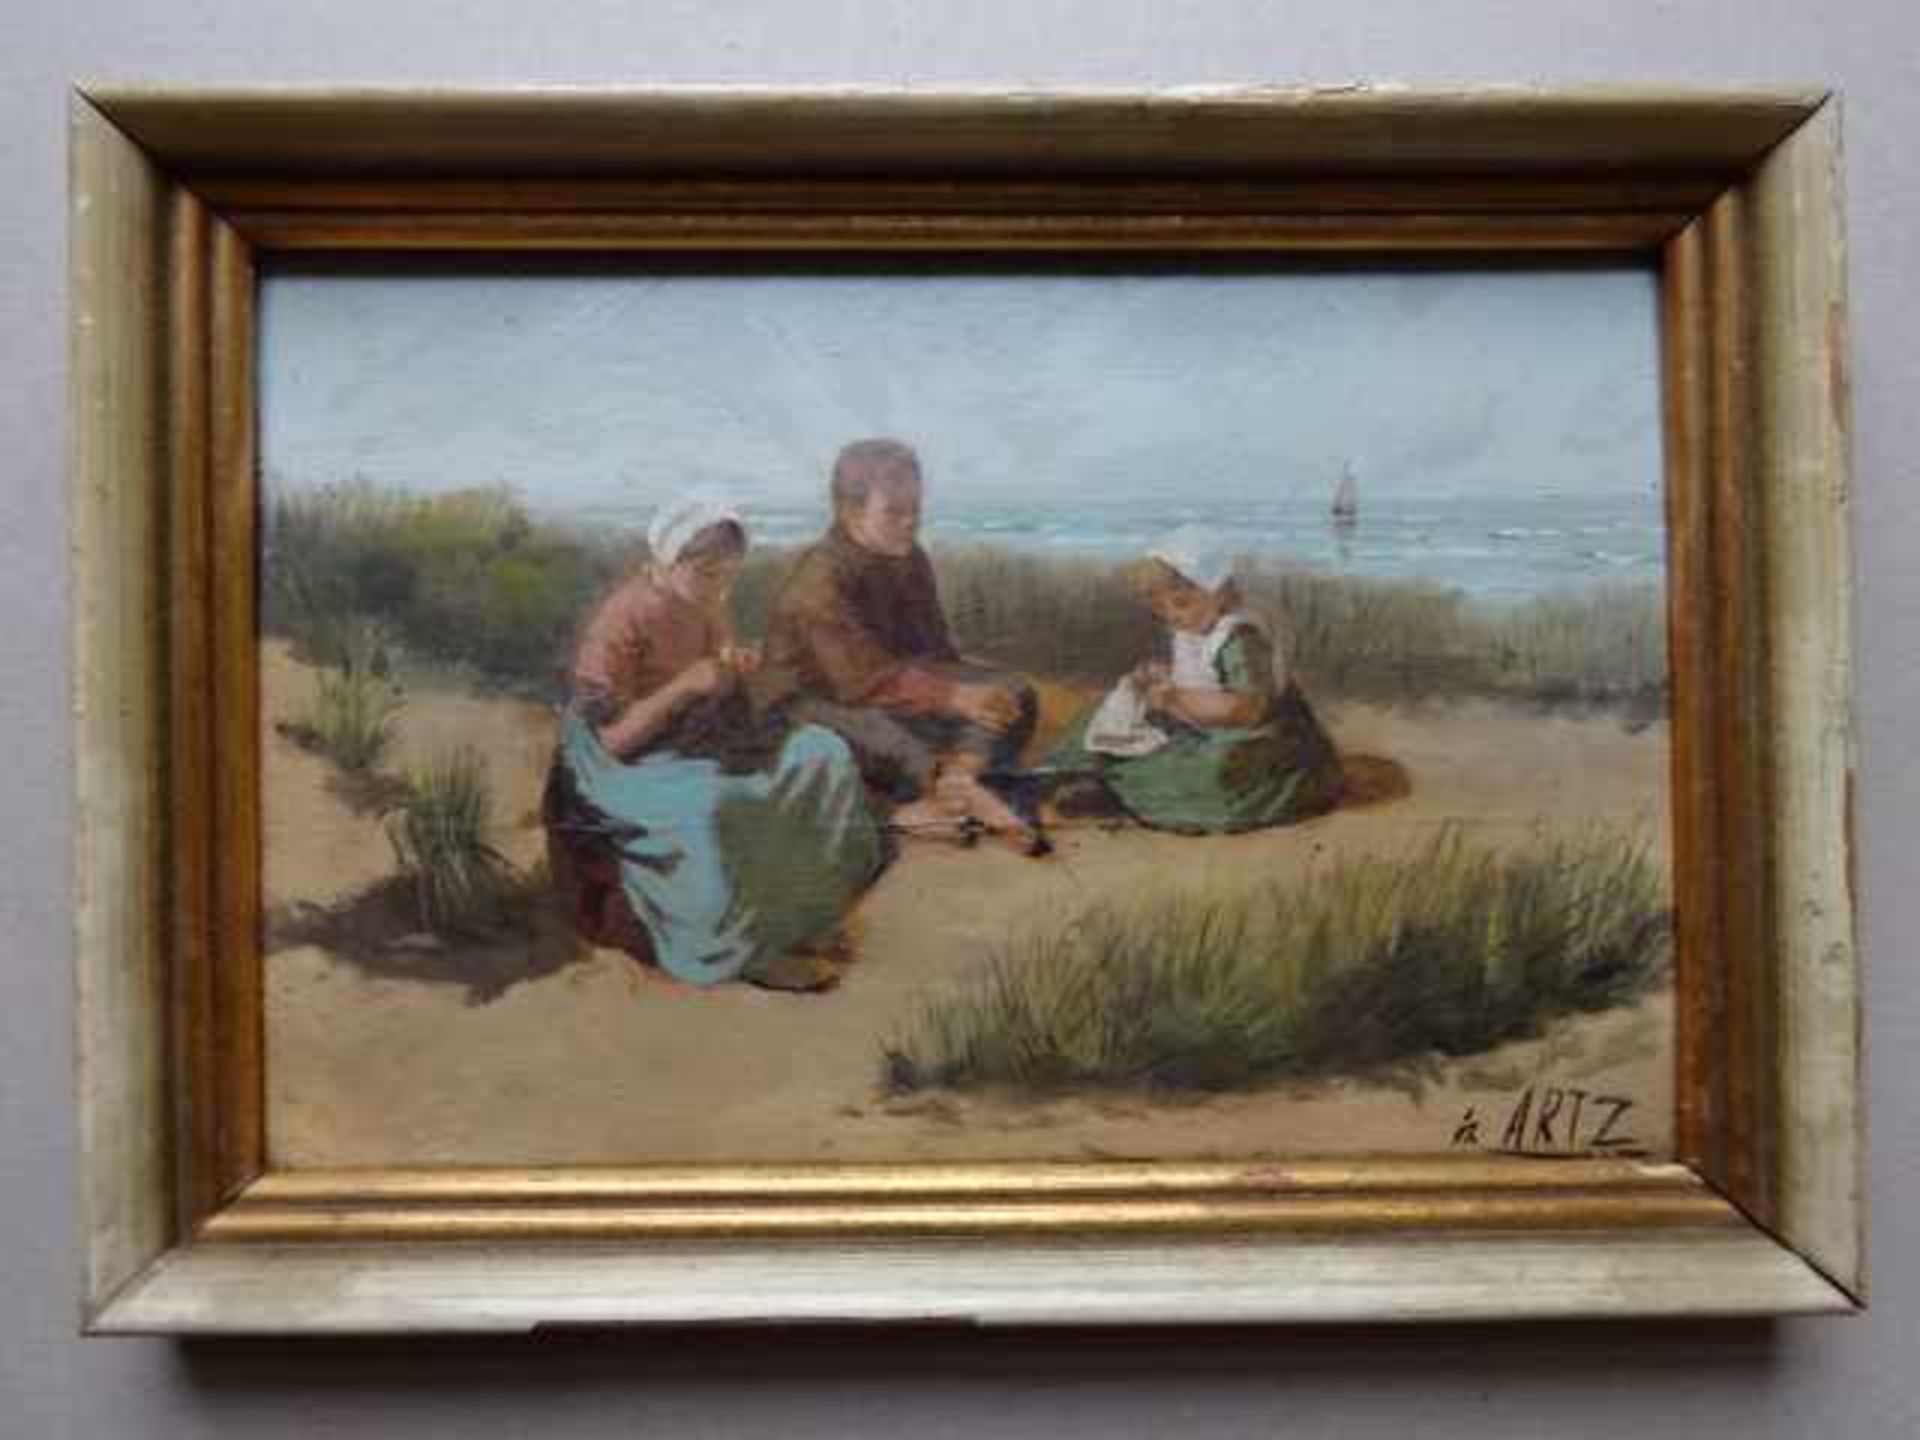 Artz, David Adolf Constant (Den Haag 1837 - 1890). Kinder in den Dünen. Öl auf Holz. Um 1880. - Bild 2 aus 4